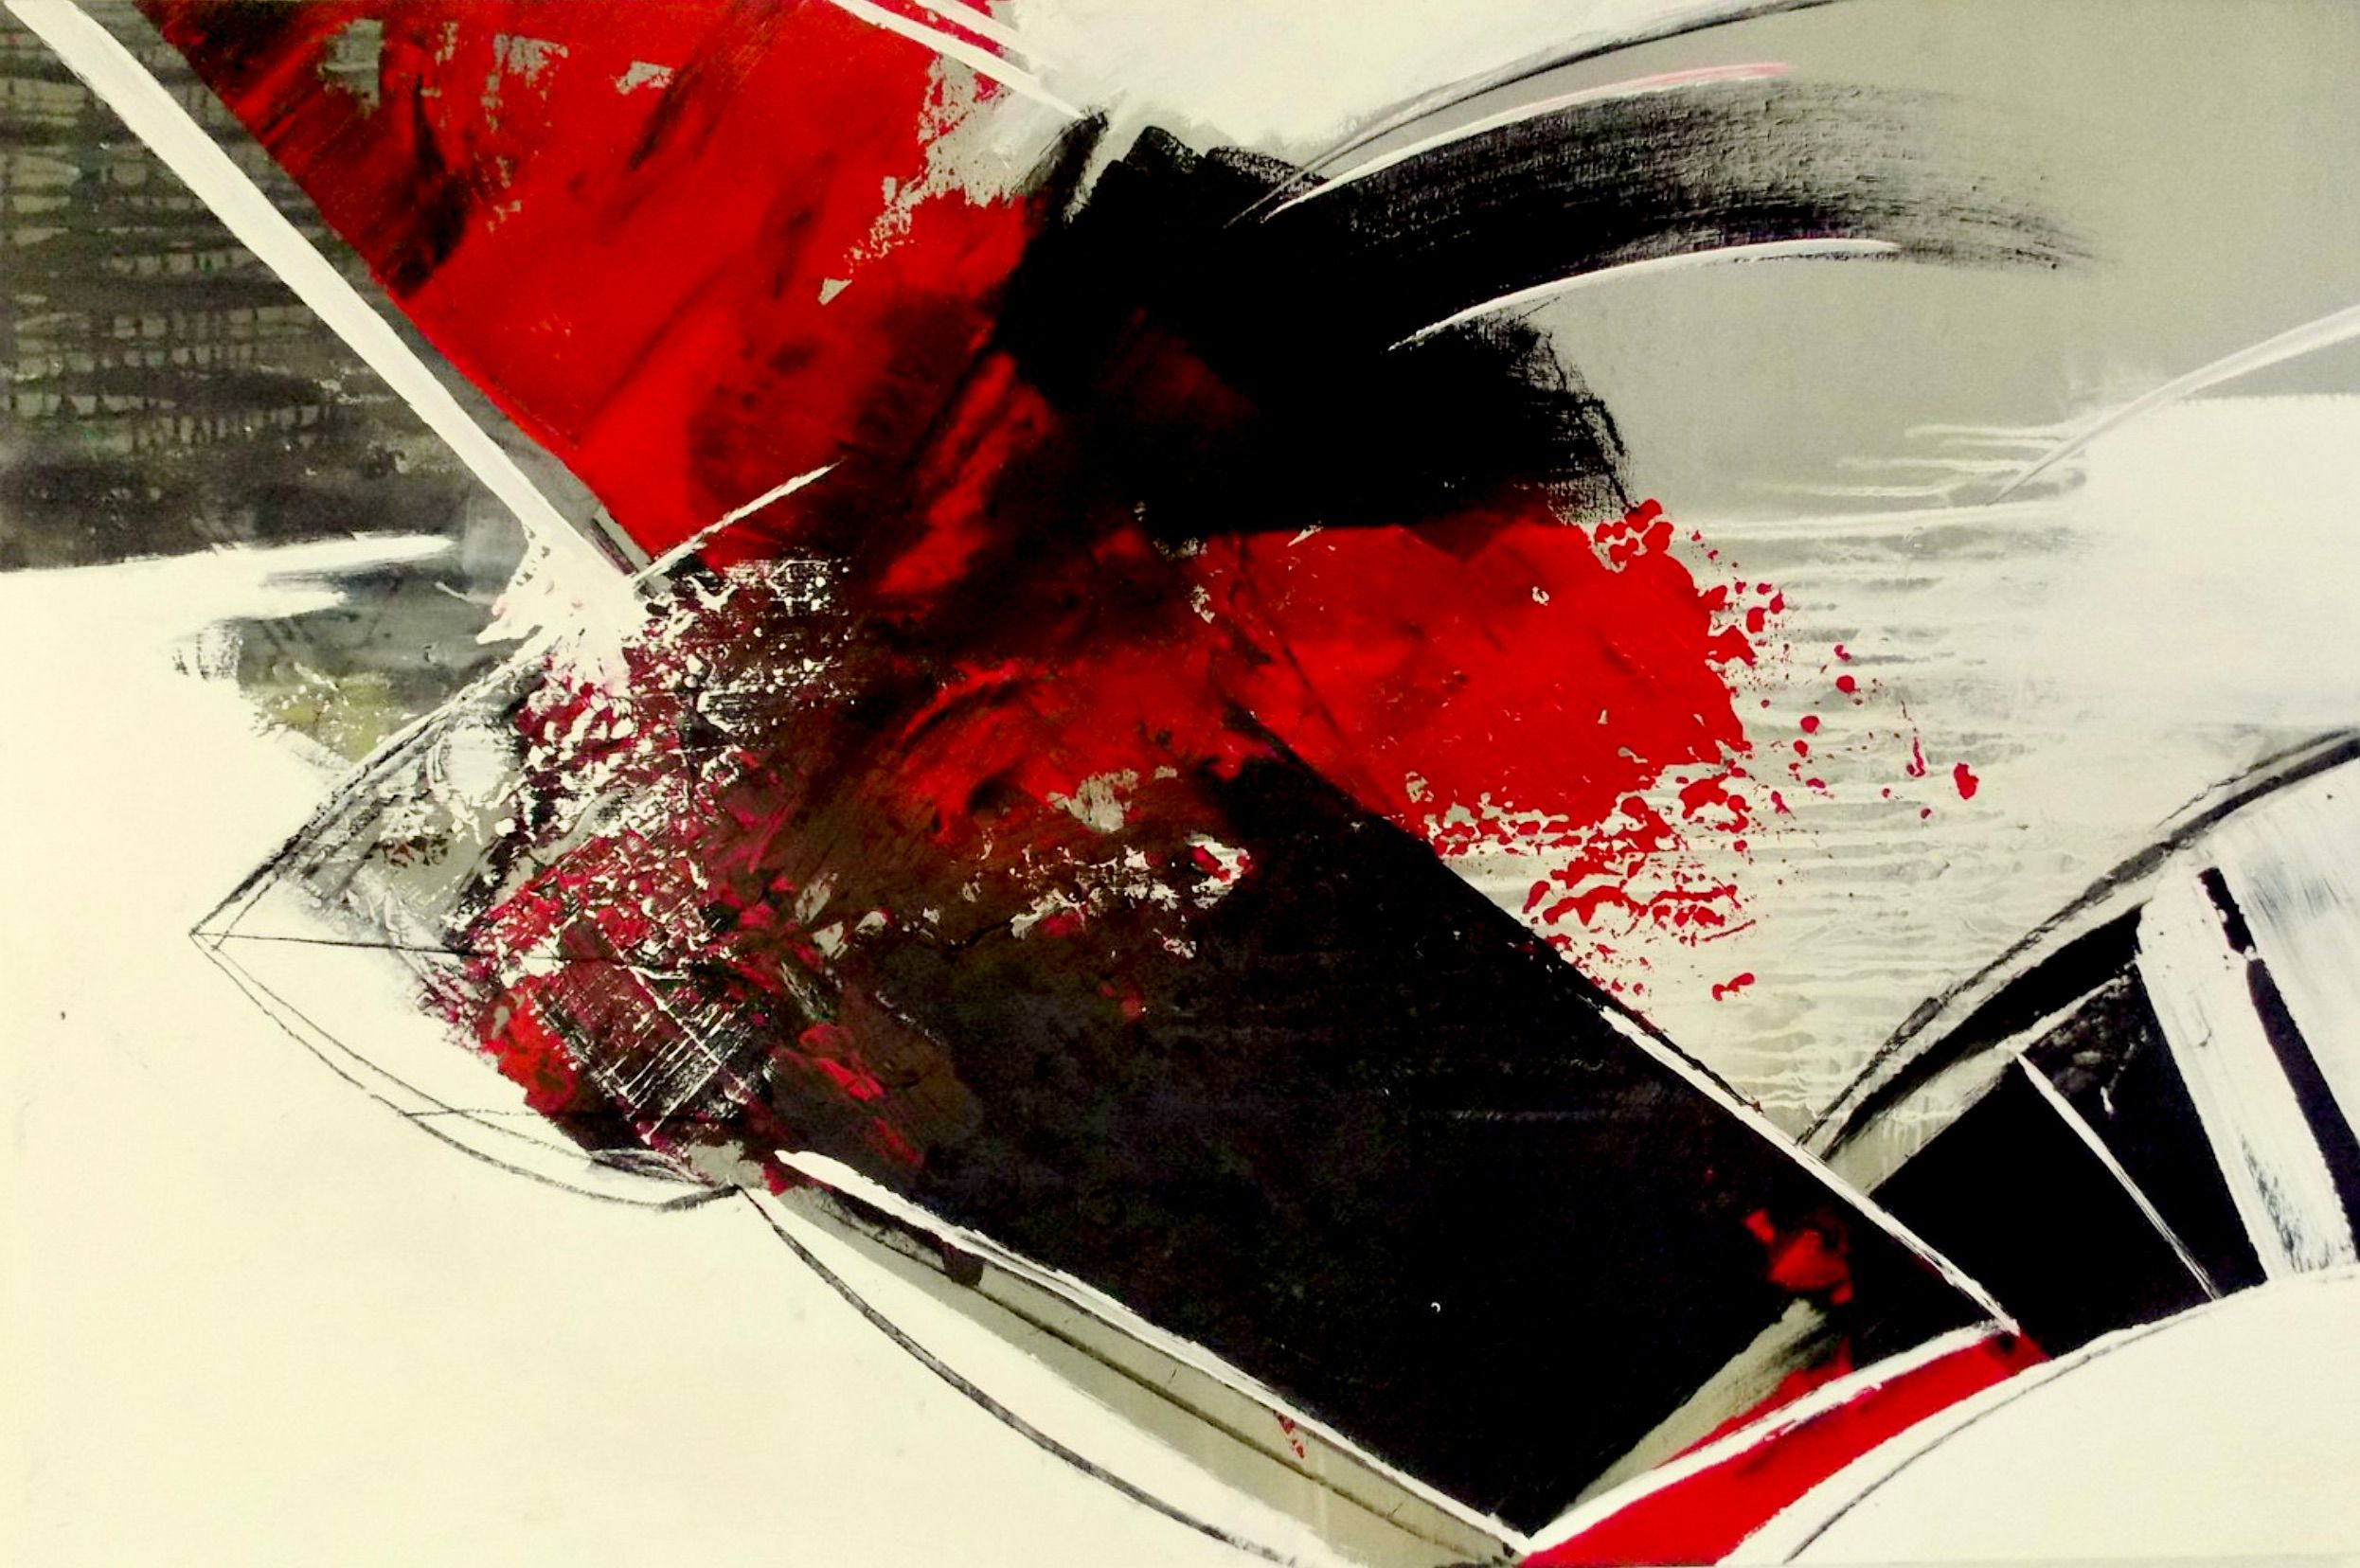 克里斯塔-哈克的 "红场-减少-"这幅抽象画的颜色是红色、黑色和米色。